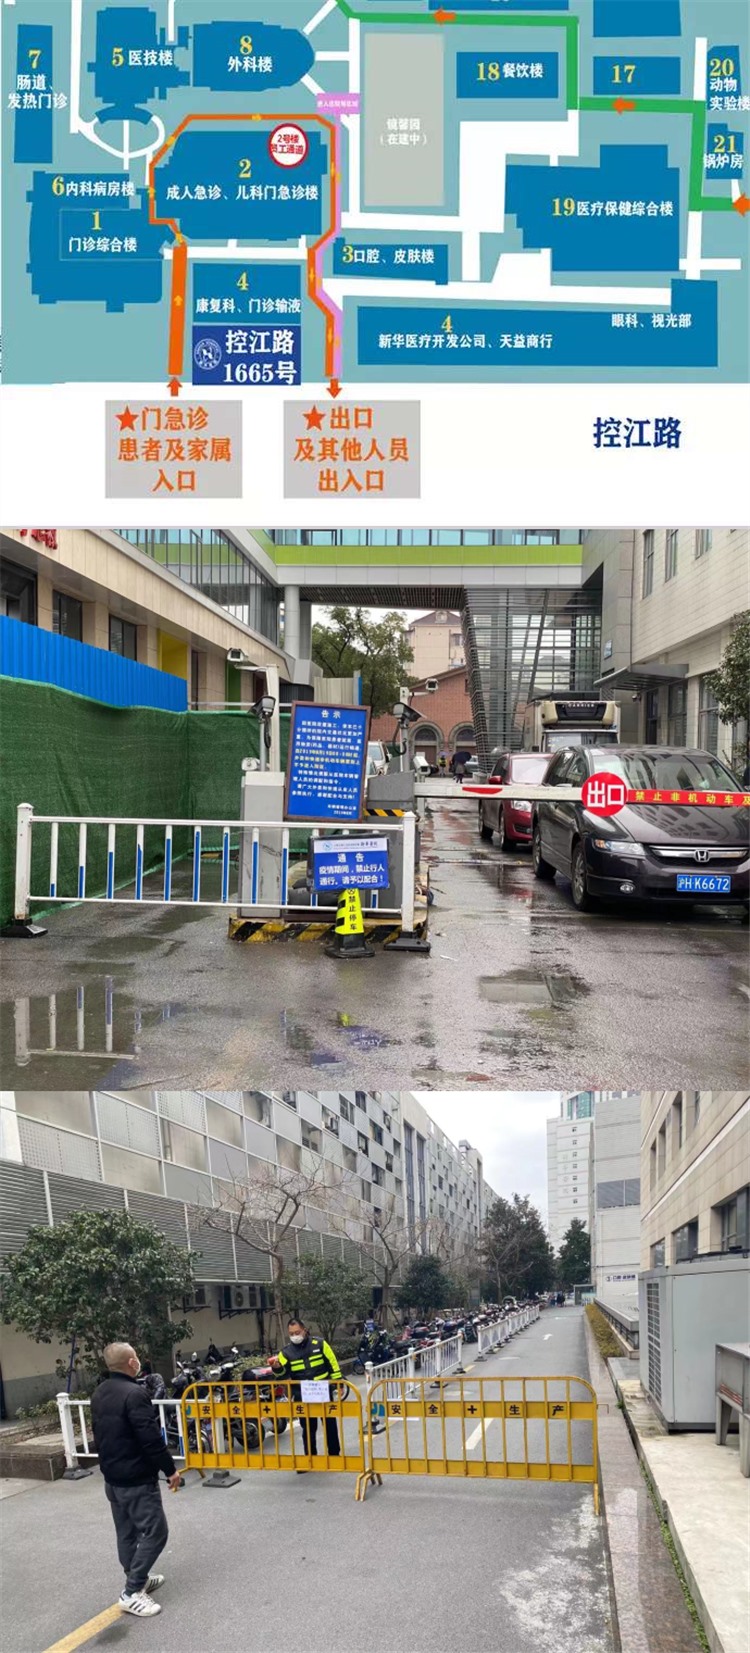 新华医院——外来就诊行人控制在控江路进出，并在内部通道进行隔绝，其他通道仅内部人员使用。